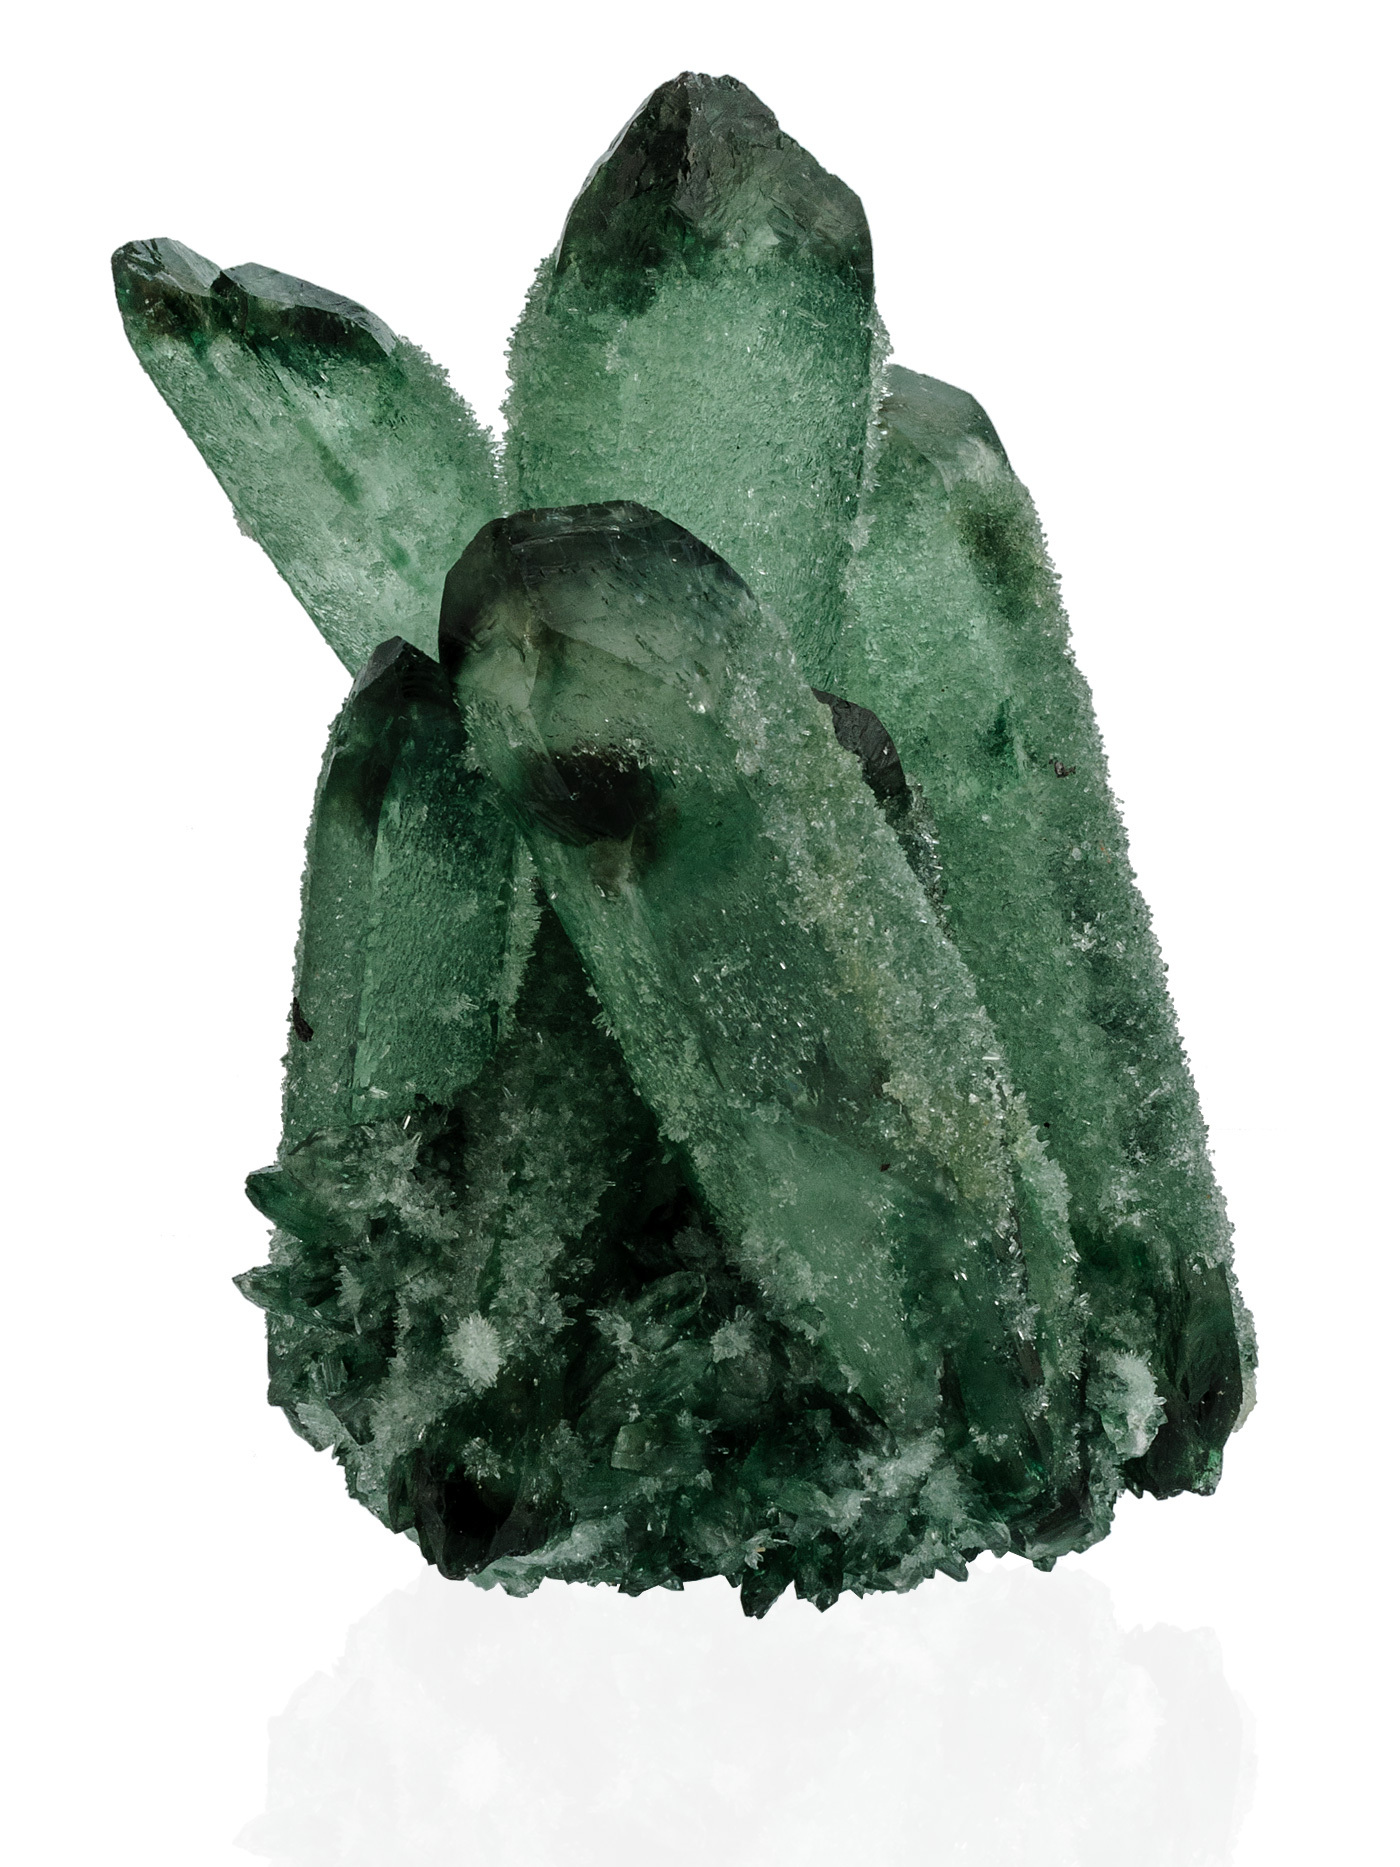 Кристалл зеленого кварца - артикул 426125062 - купить в интернет-магазинеювелирной бижутерии Lattrice